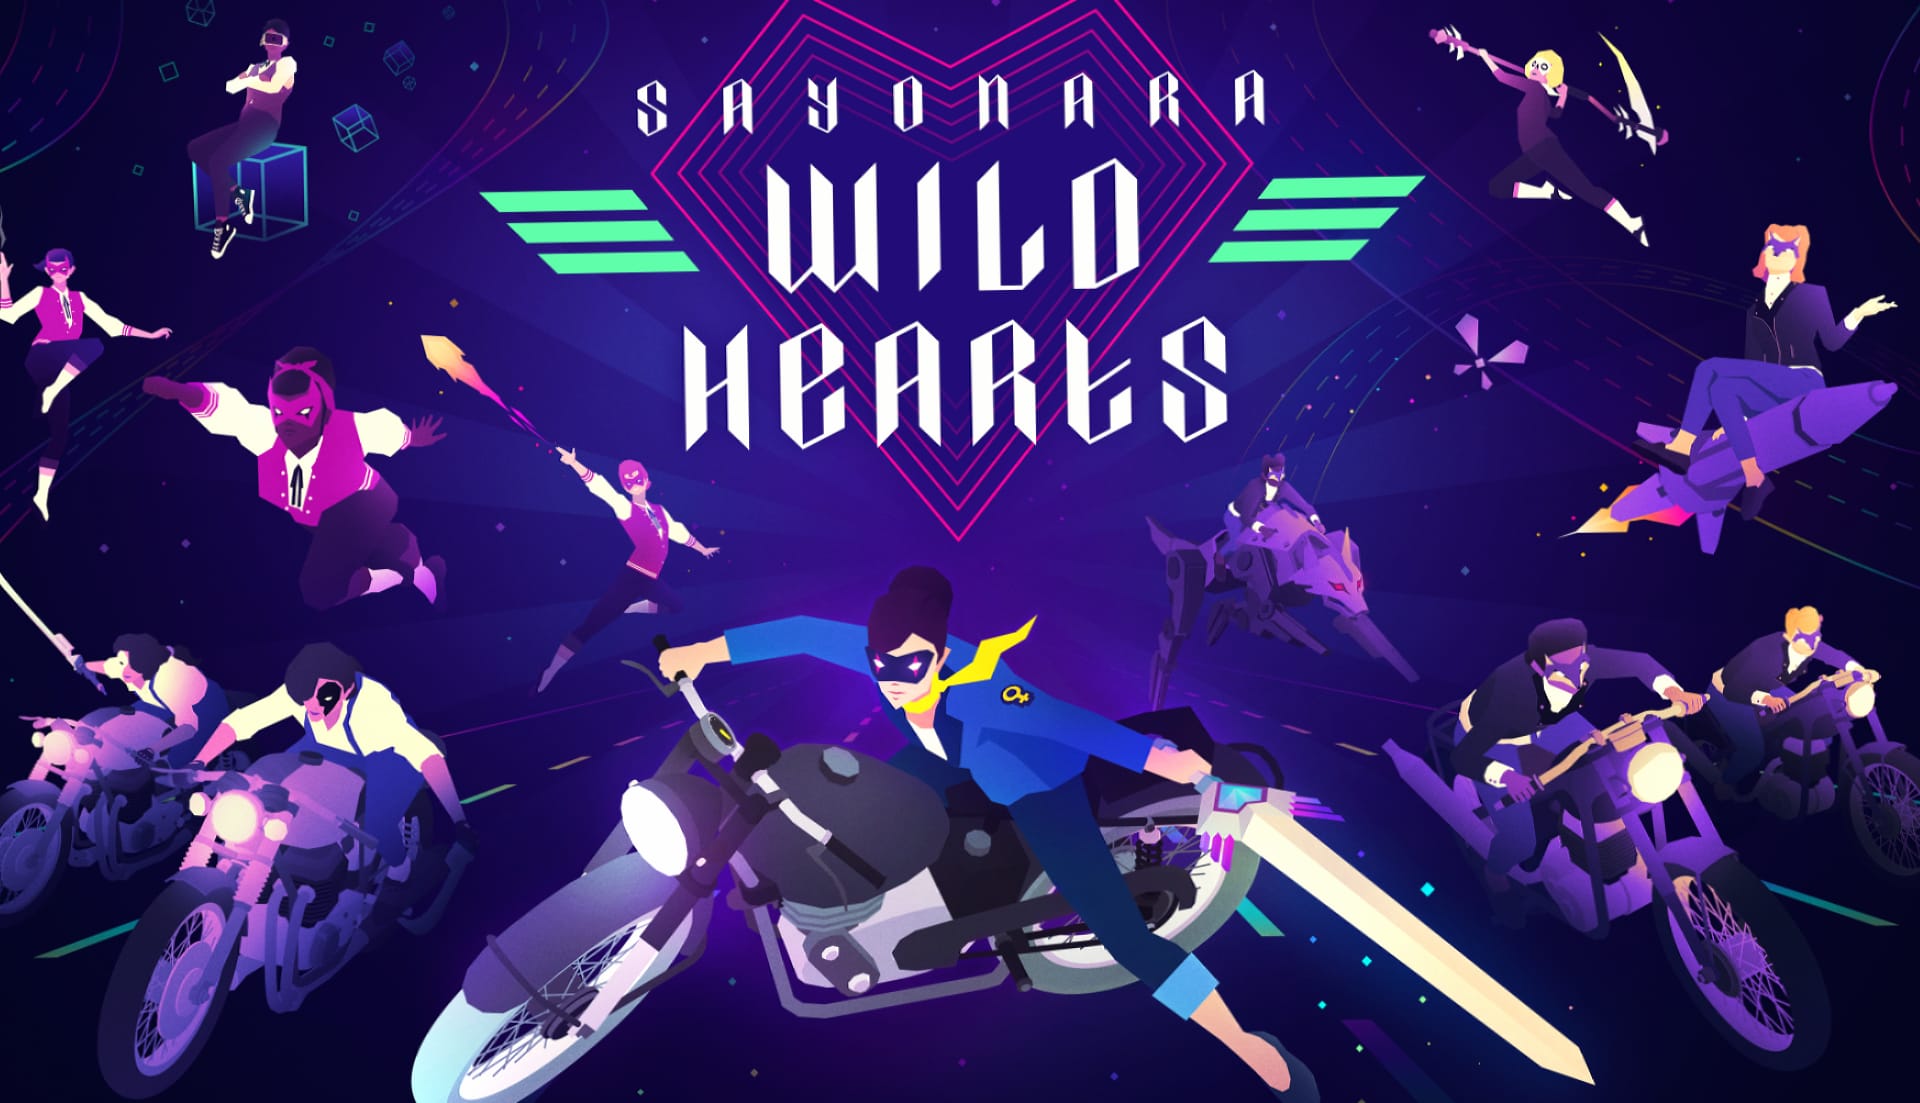 Sayonara Wild Hearts at 1024 x 768 size wallpapers HD quality